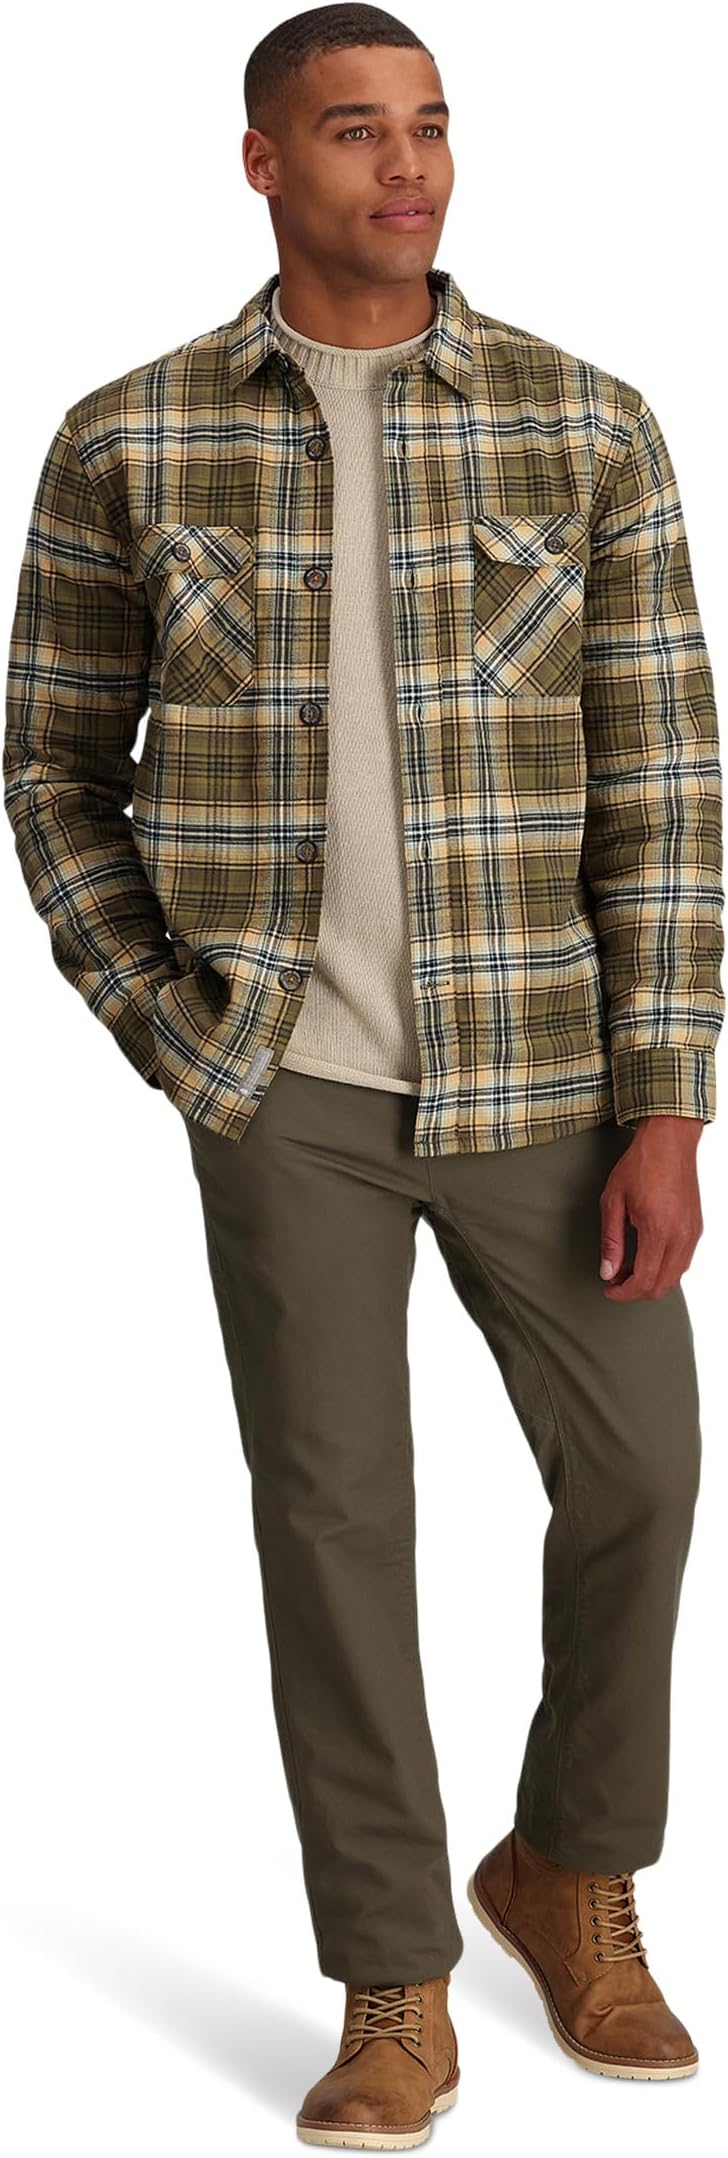 Куртка Snowcap Lined Flannel Long Sleeve Royal Robbins, цвет Dark Olive Rush Creek Plaid